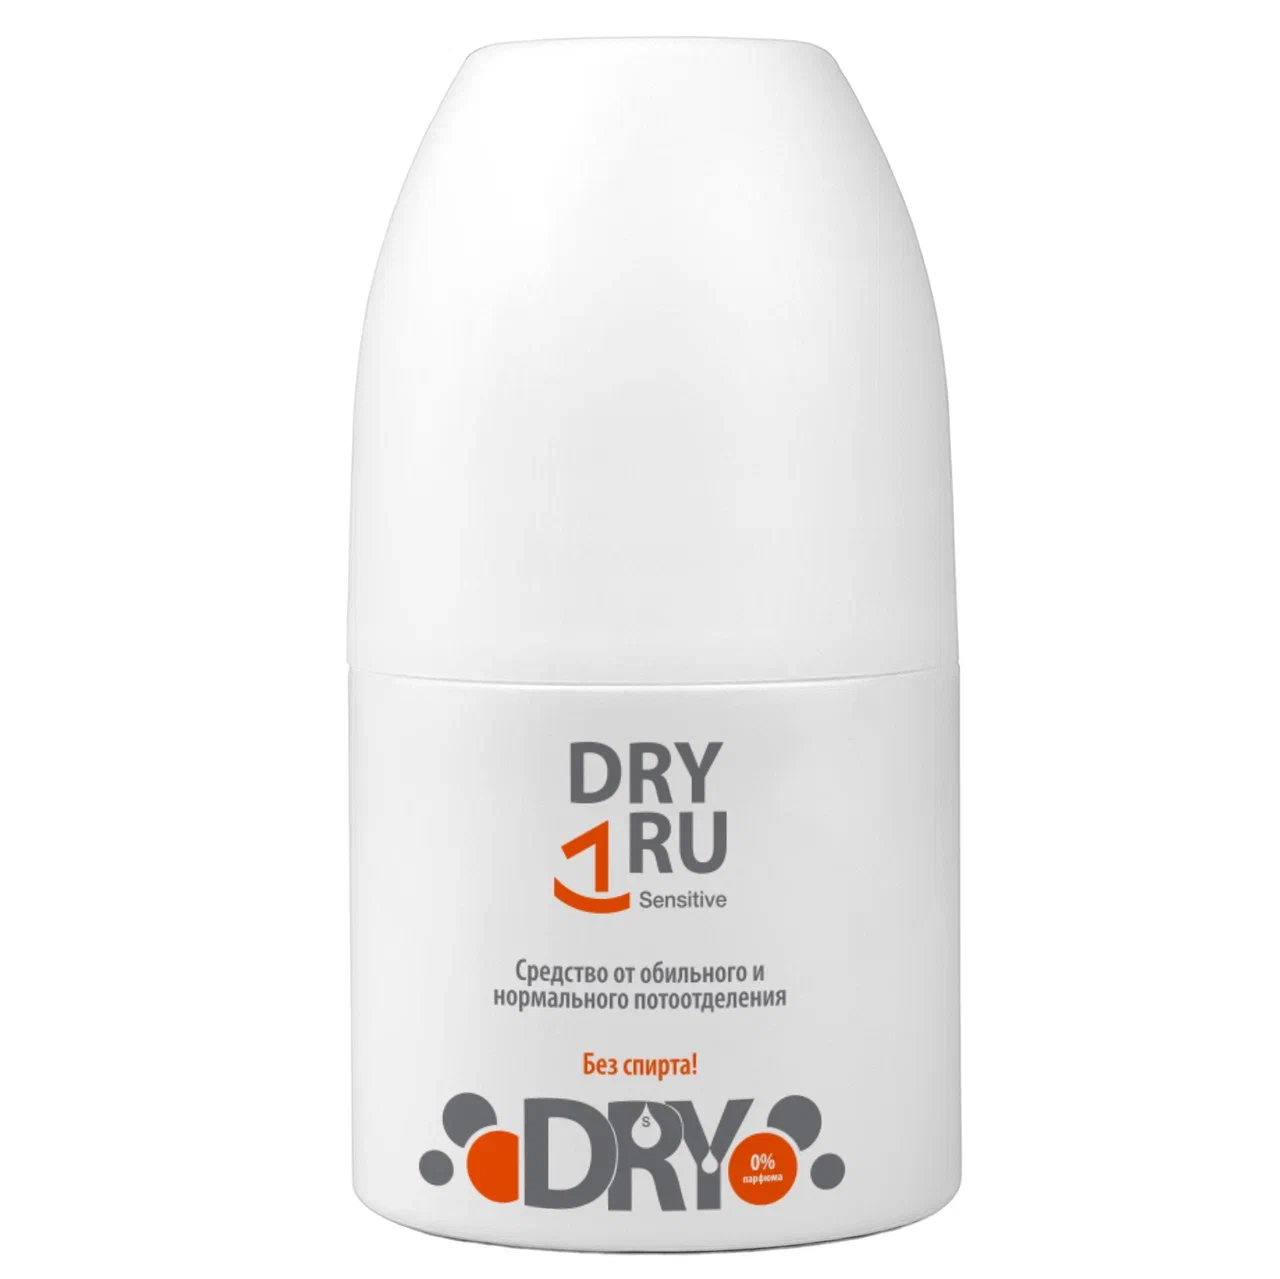 Дезодорант-антиперспирант DRY RU Sensitive шариковый, от пота и запаха 50 мл 911 теймурова спрей д ног от запаха и пота 150мл